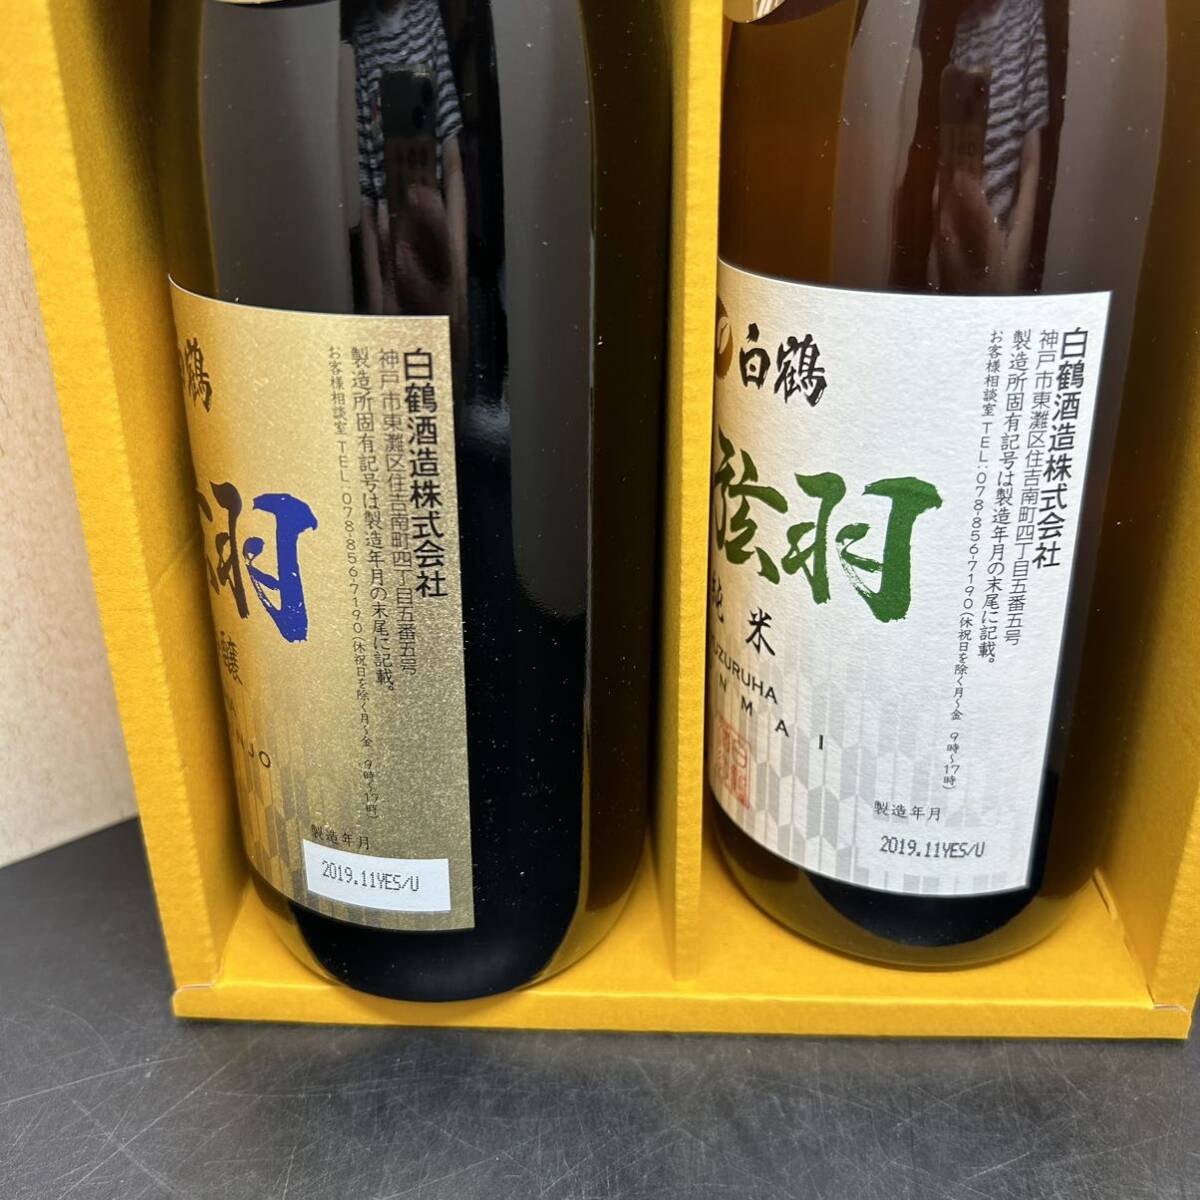  white crane bow string feather junmai sake junmai sake .. sake japan sake 2019 year 571